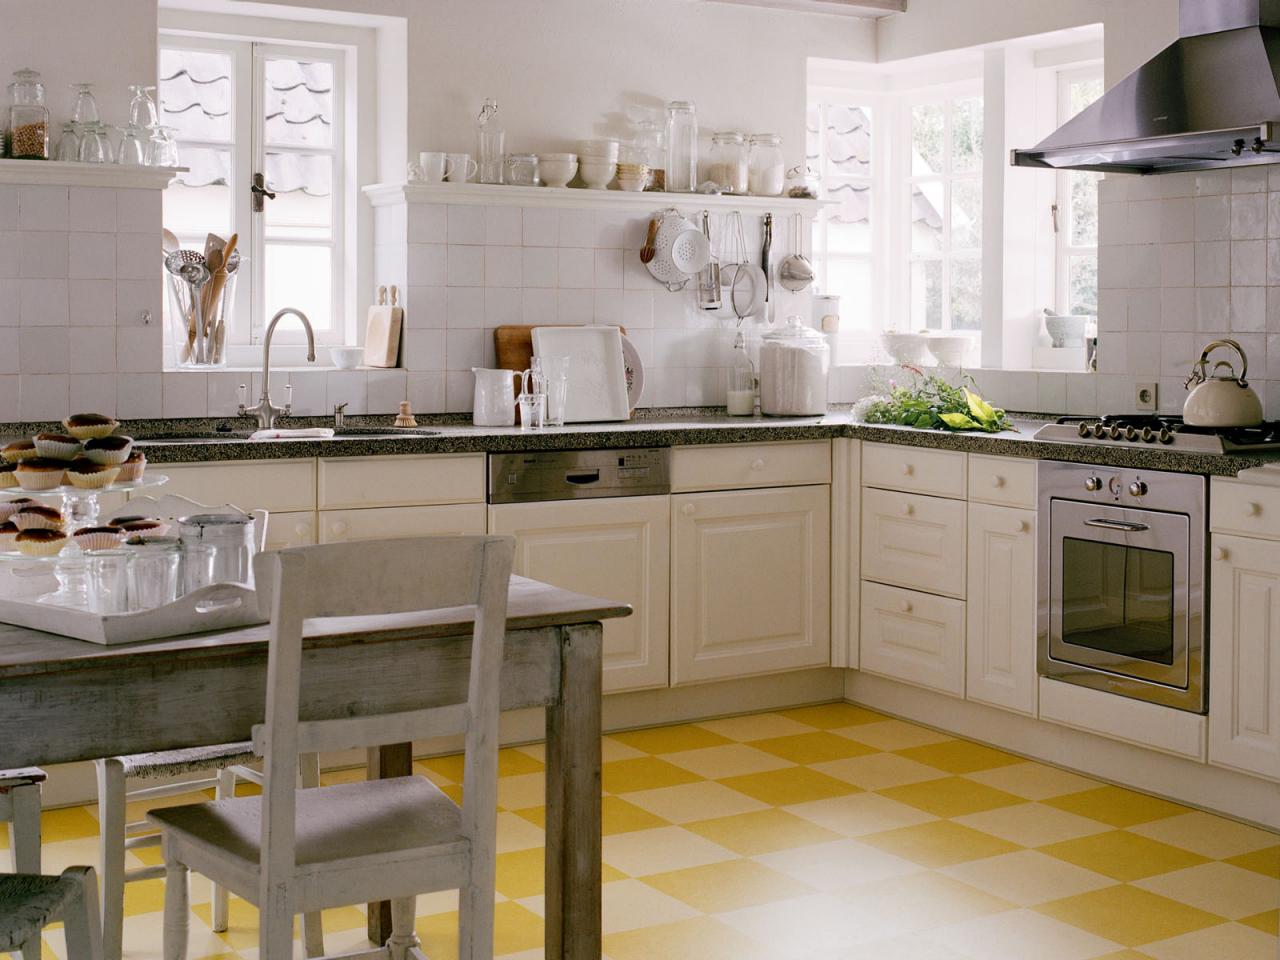 Linoleum Flooring In The Kitchen, Vinyl Flooring Patterns For Kitchens